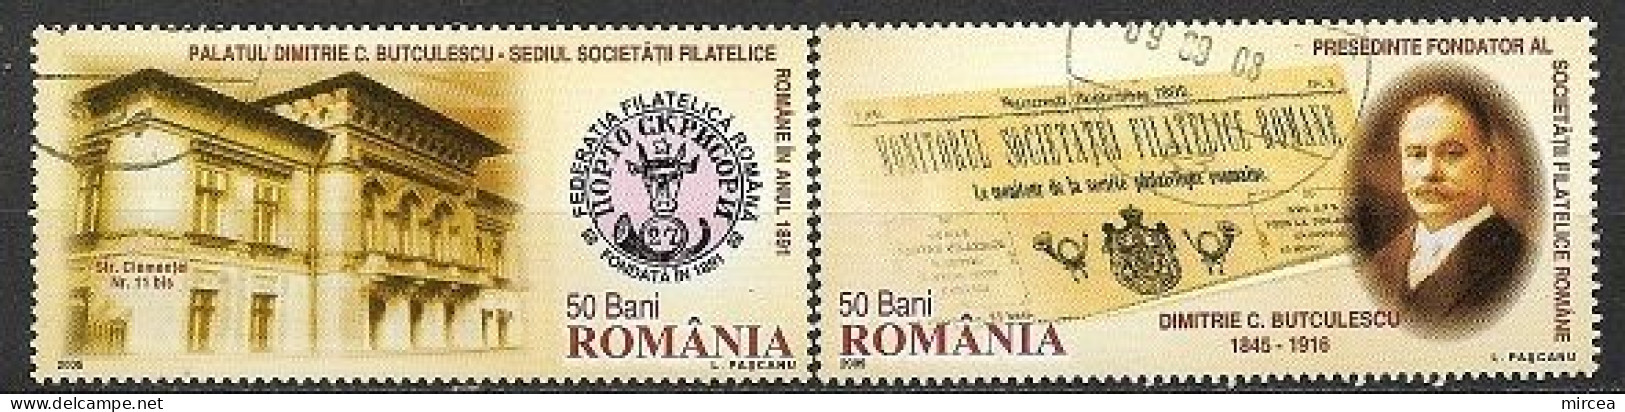 C3981 - Roumanie 2005 - 2v.obliteres - Oblitérés